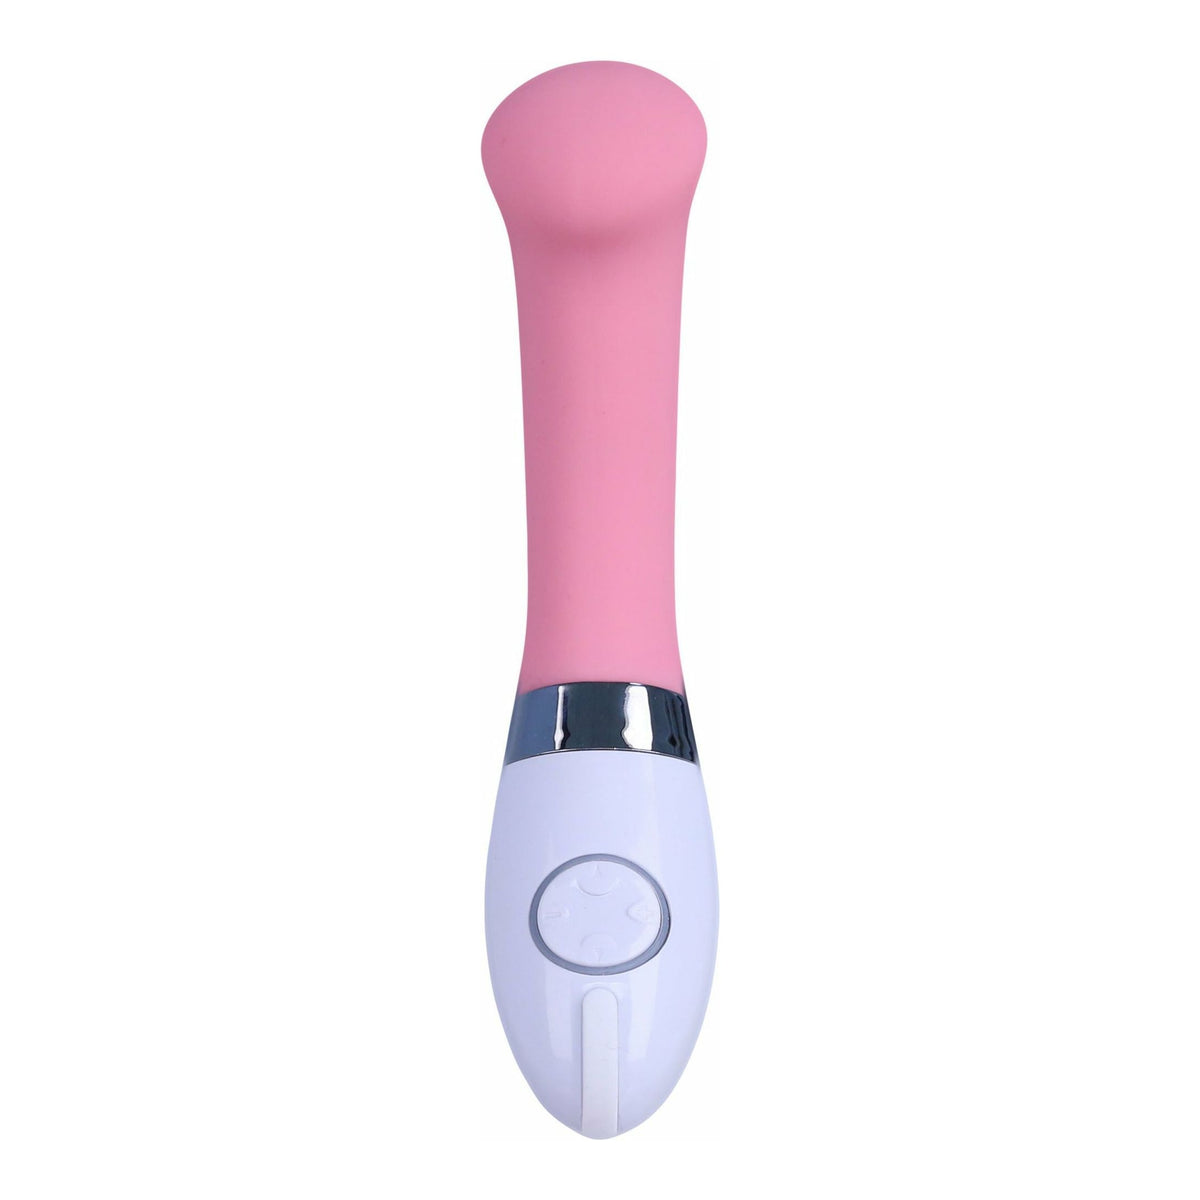 Bella Silicone G-Spot Vibrator - Pink